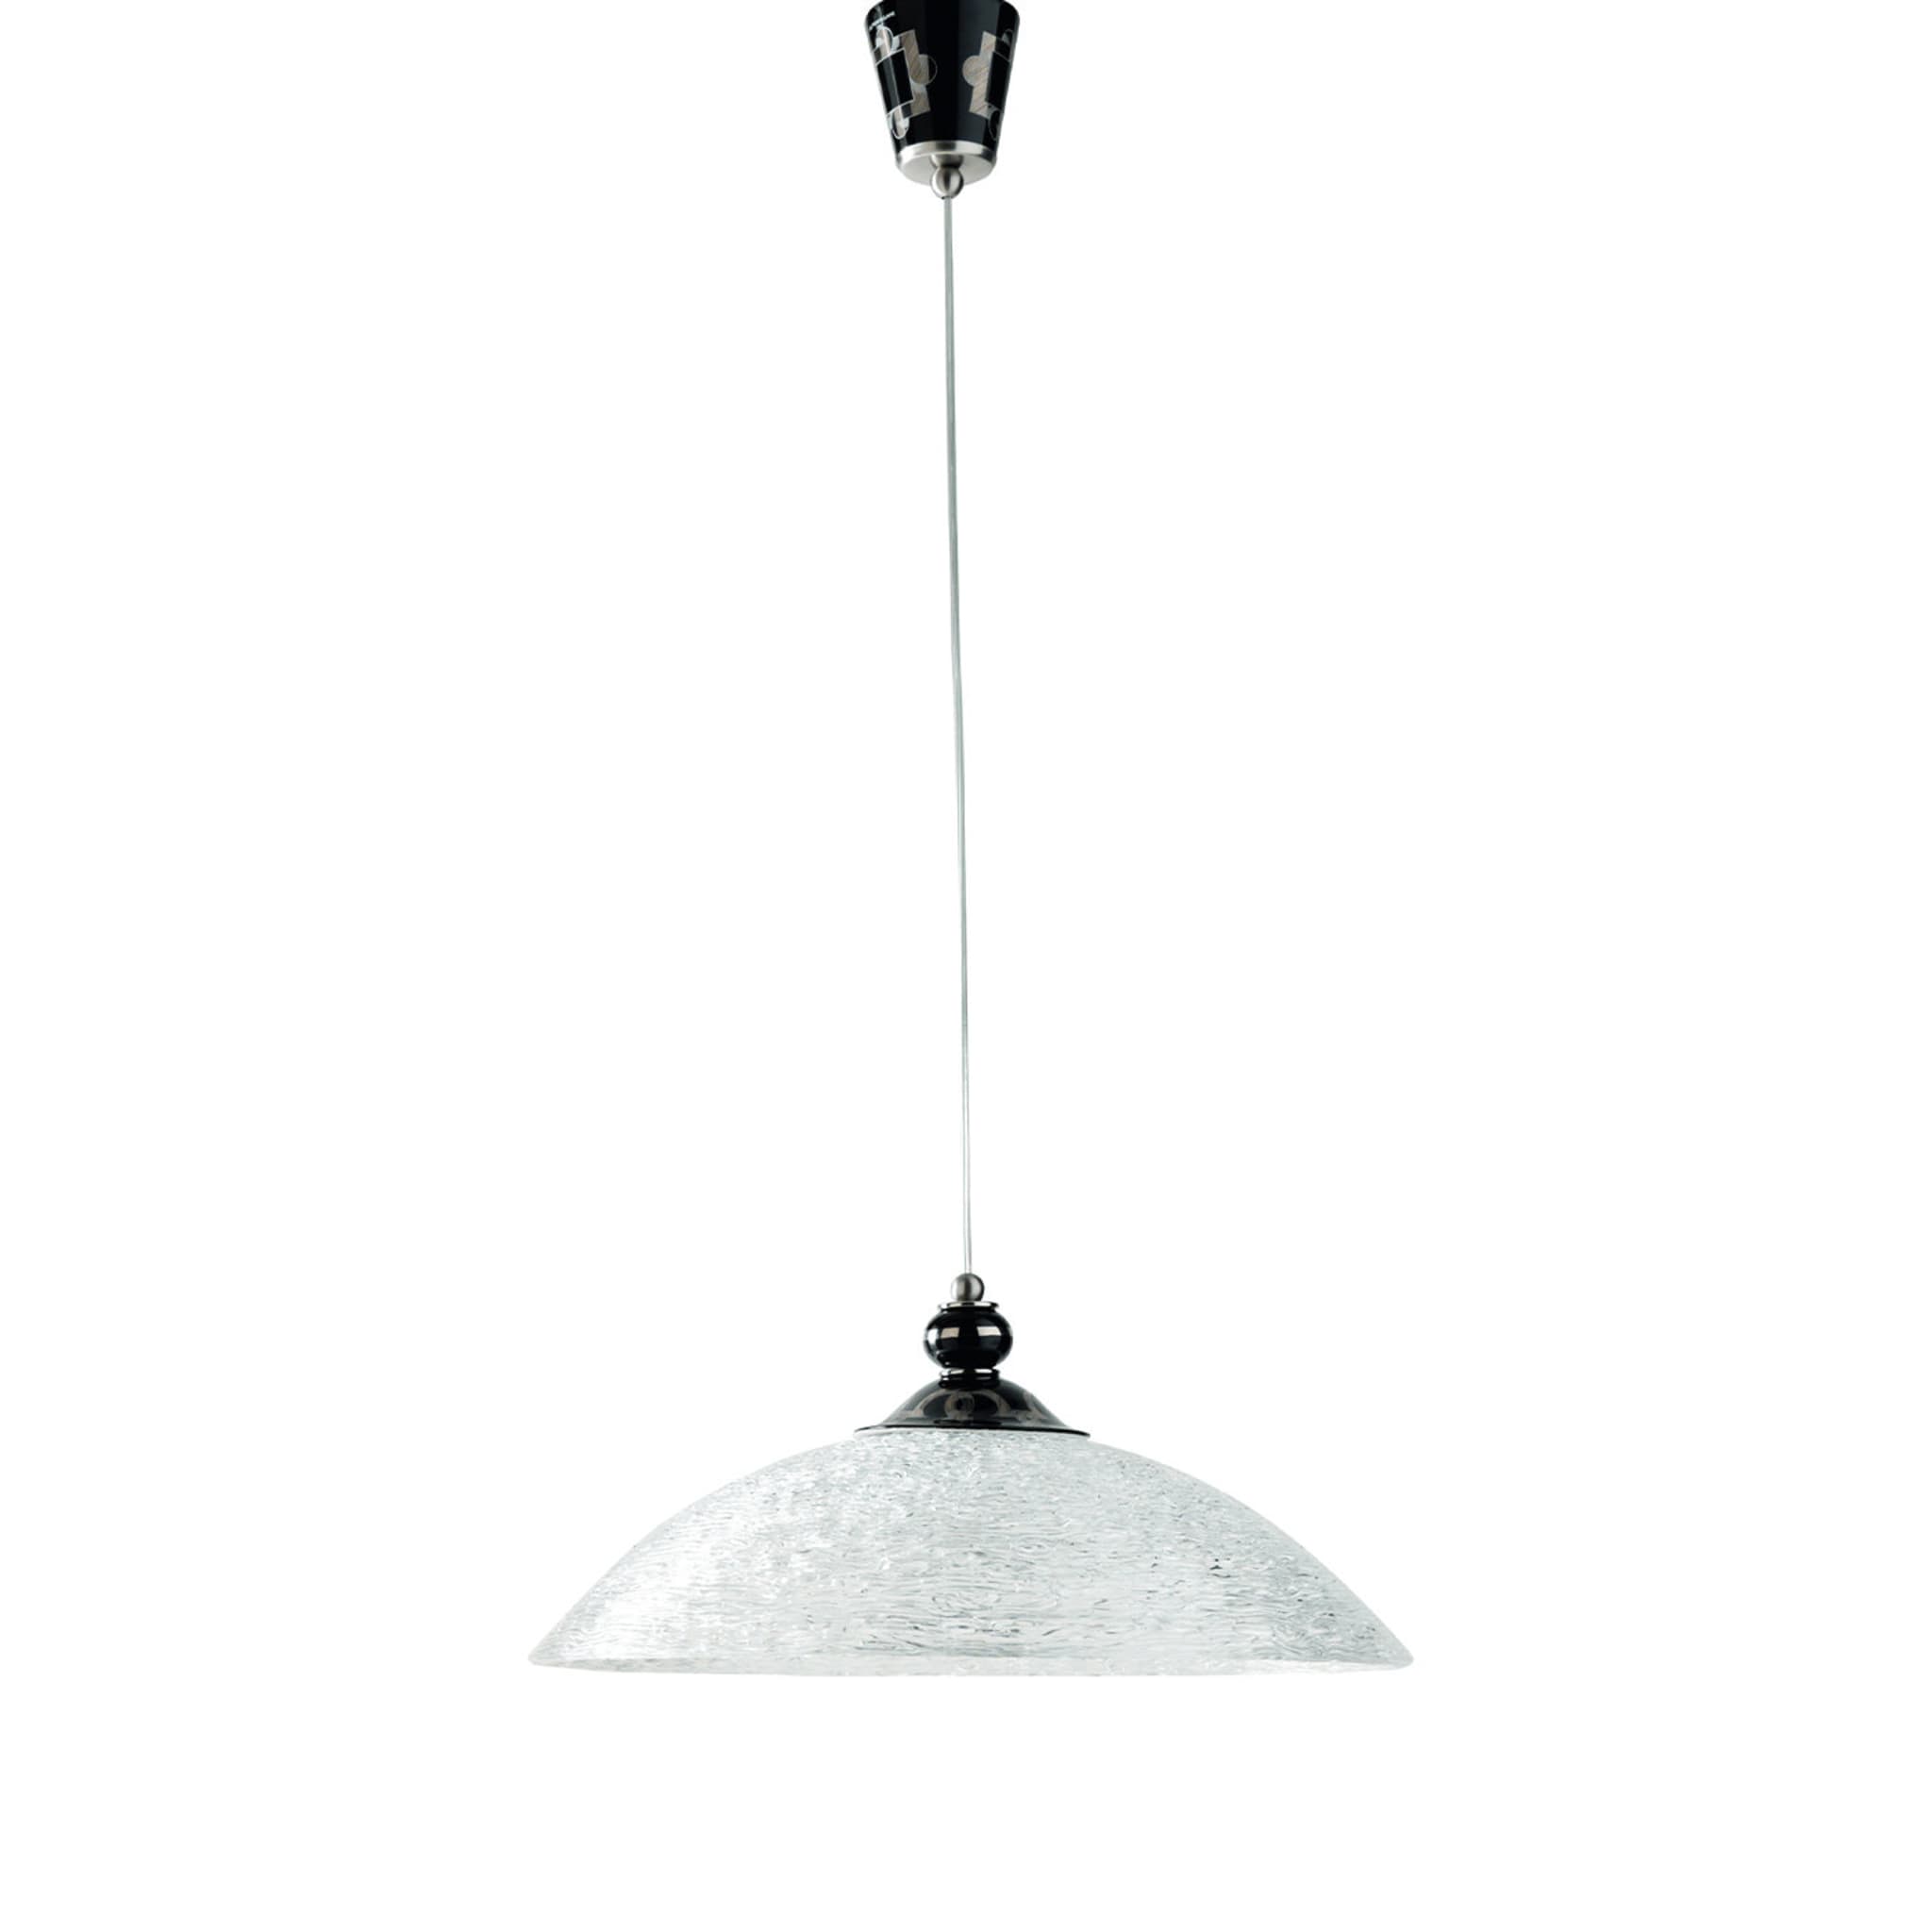 Tarsia Black and Platinum Pendant Lamp - Main view